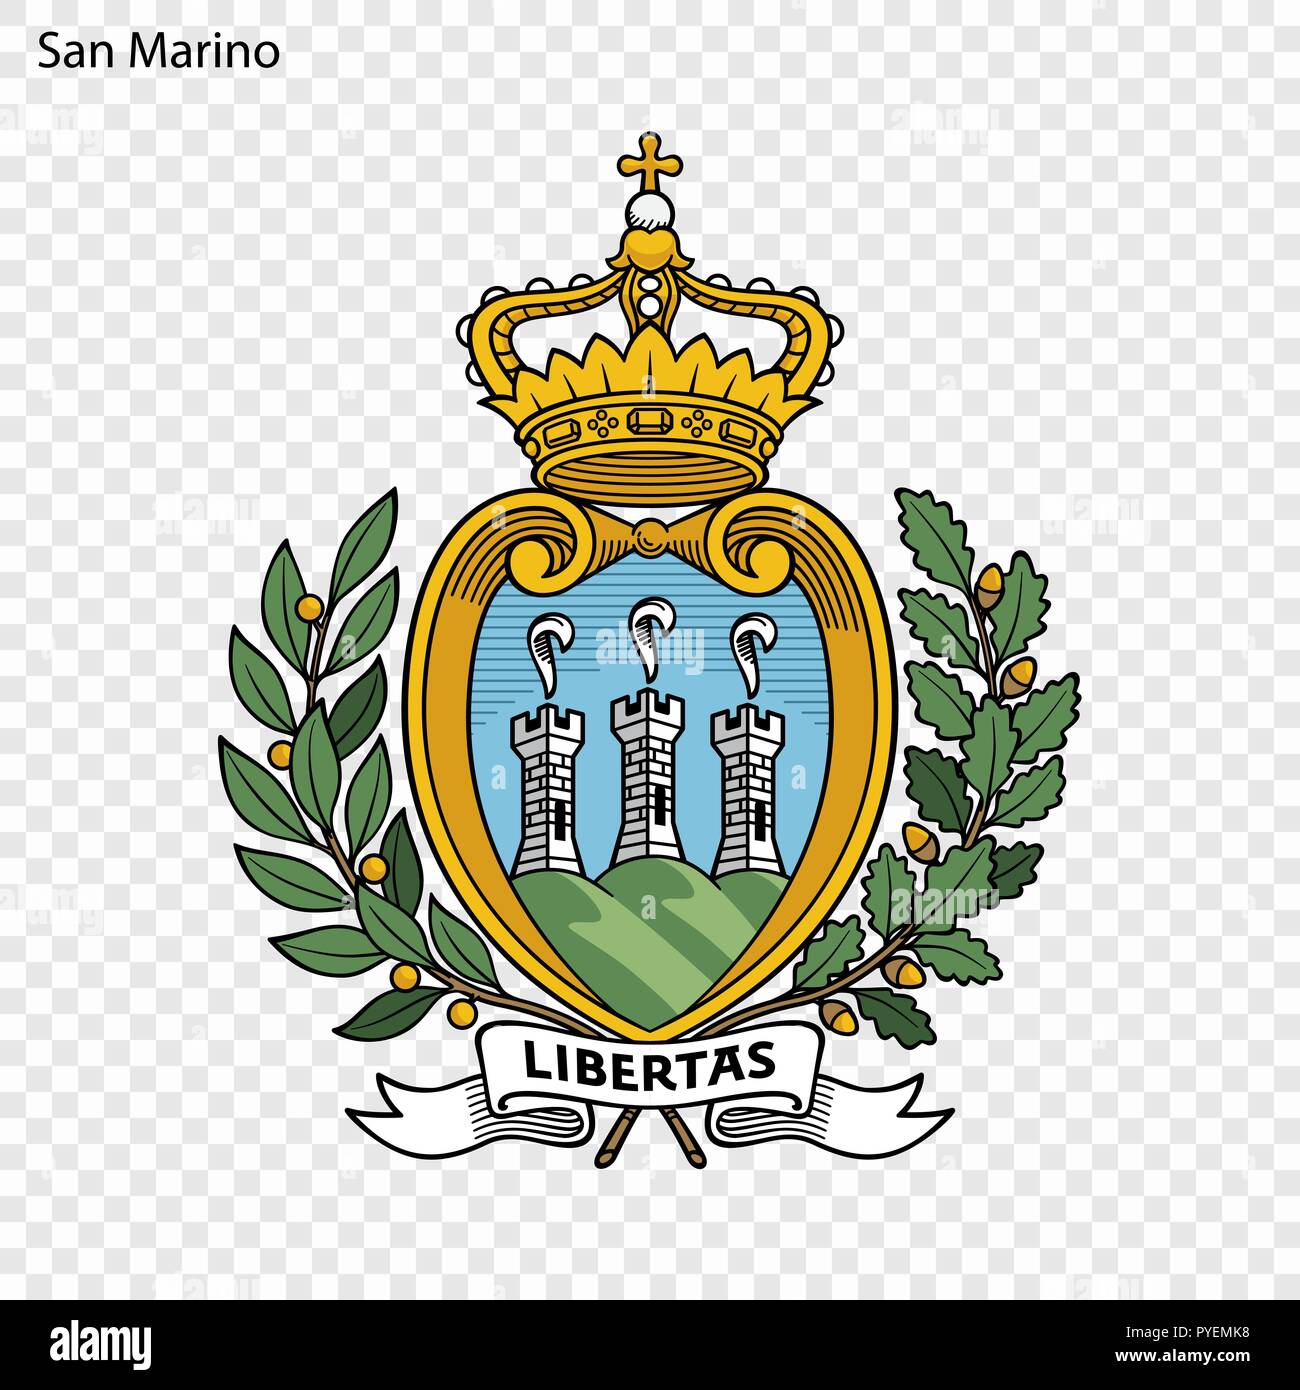 Флаг сан марино. Сан Марино флаг и герб. Герб Сан Марино. Столица Сан-Марино флаг.